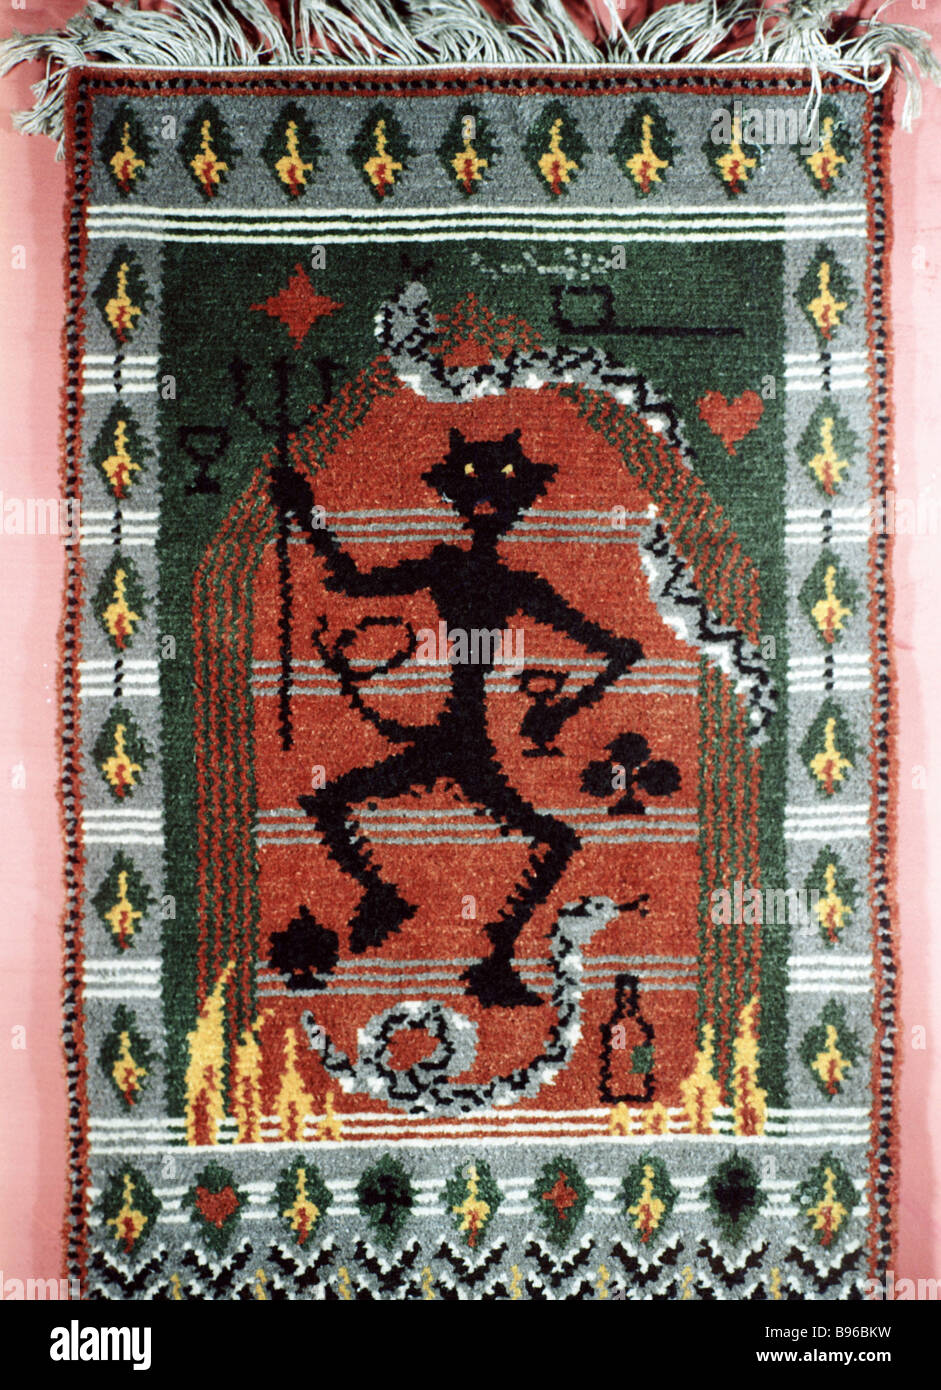 Der Beschützer des Bösen Teppich von Kalinaite Dudene aus der  Teufel-Sammlung der UdSSR s Künstler Antanas Jmuidzinavicius  Stockfotografie - Alamy